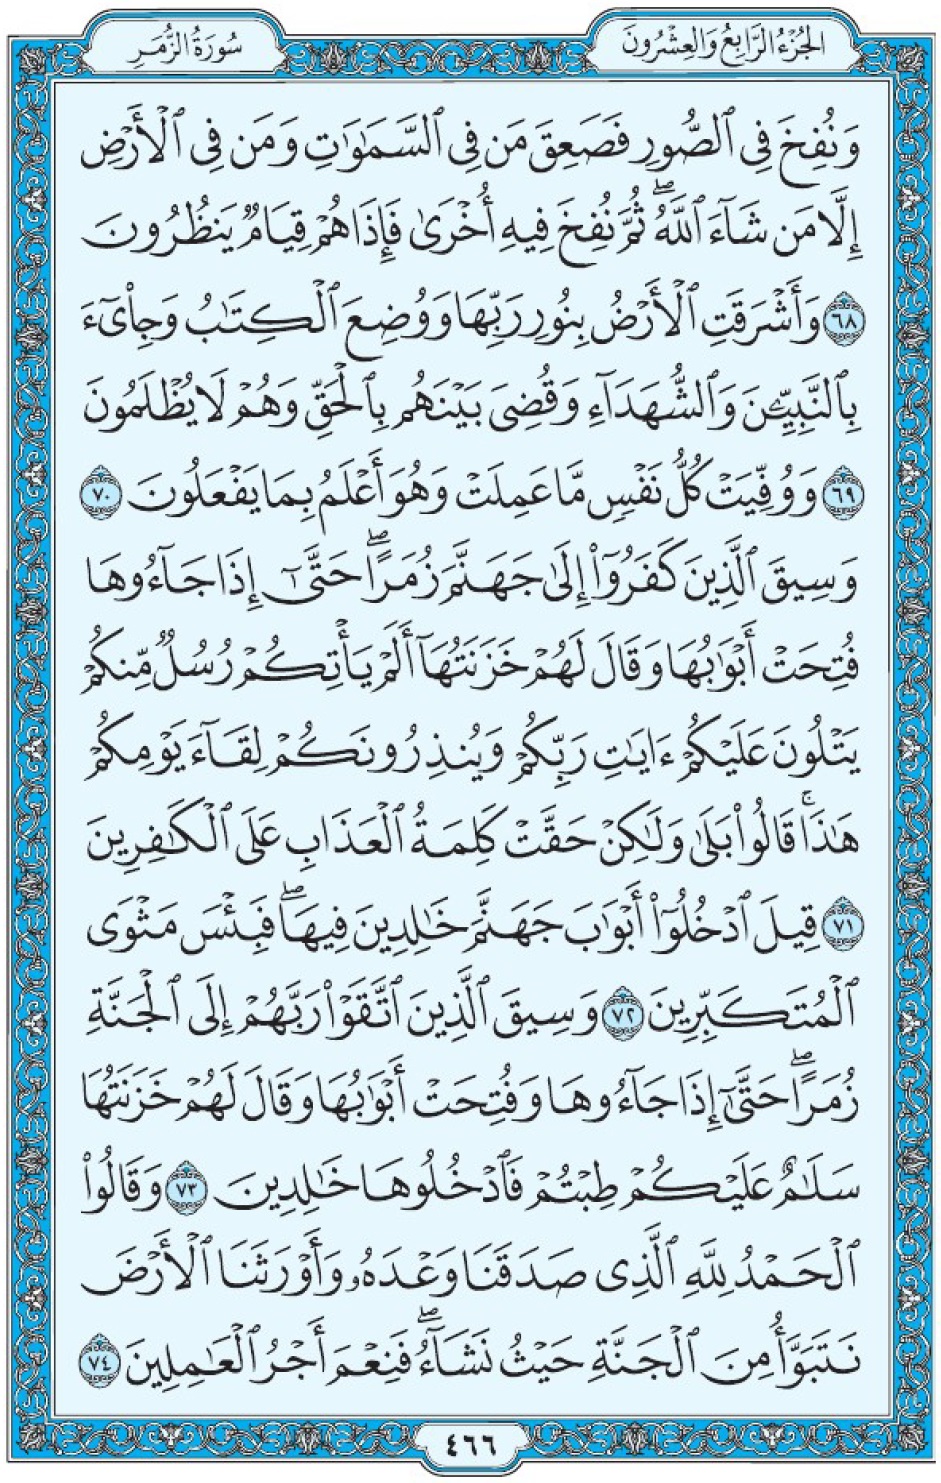 Коран Мединский мусхаф страница 466, Аз-Зумар, аят 68-74